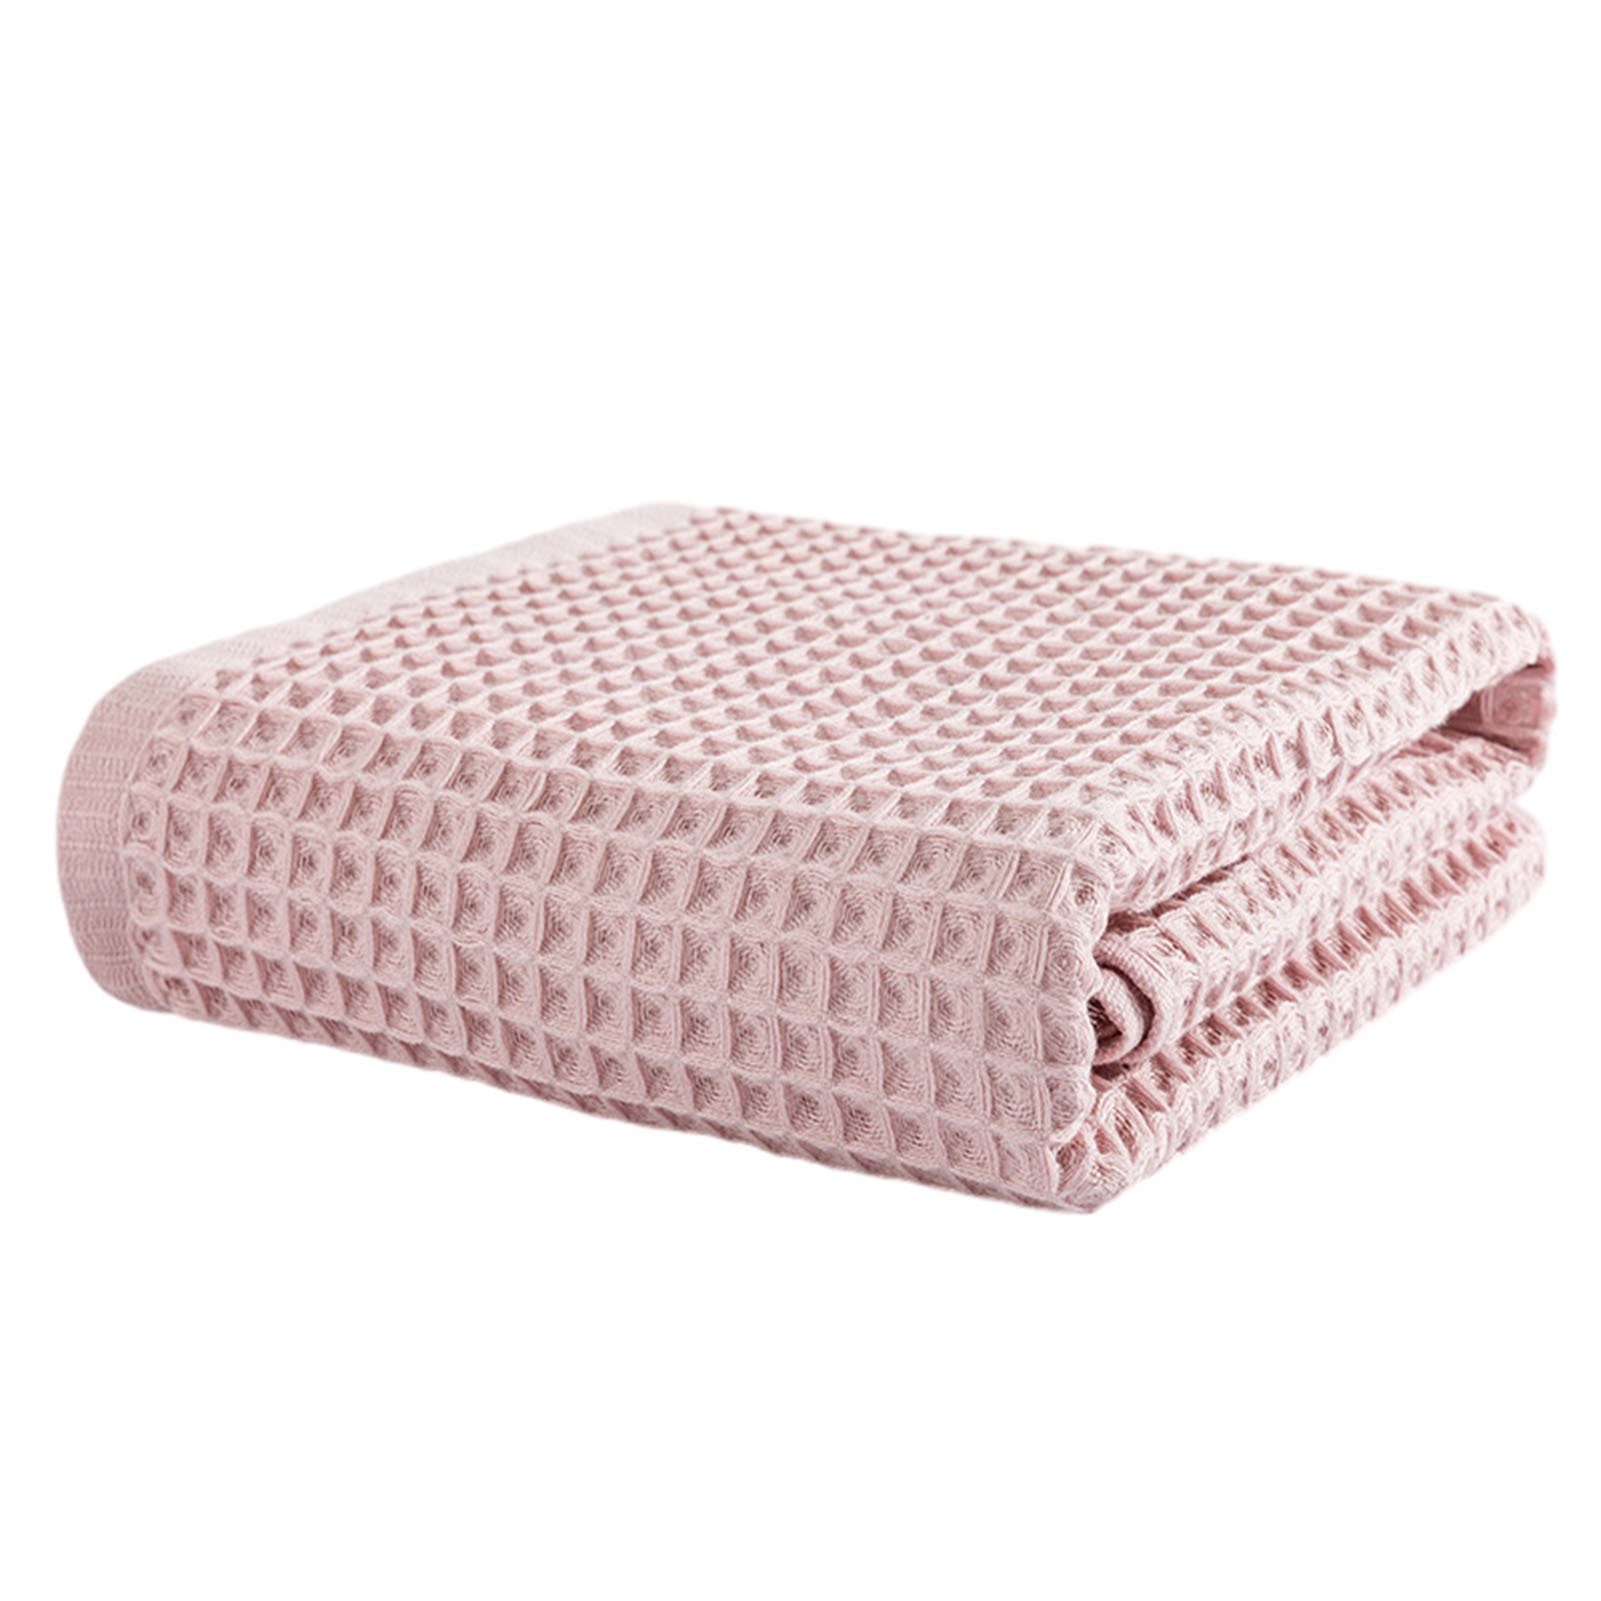 Blusmart Handtuch Set Einfarbiges Baumwoll-Waffel-Badetuch, Bequemes, Schnell Absorbierendes pink